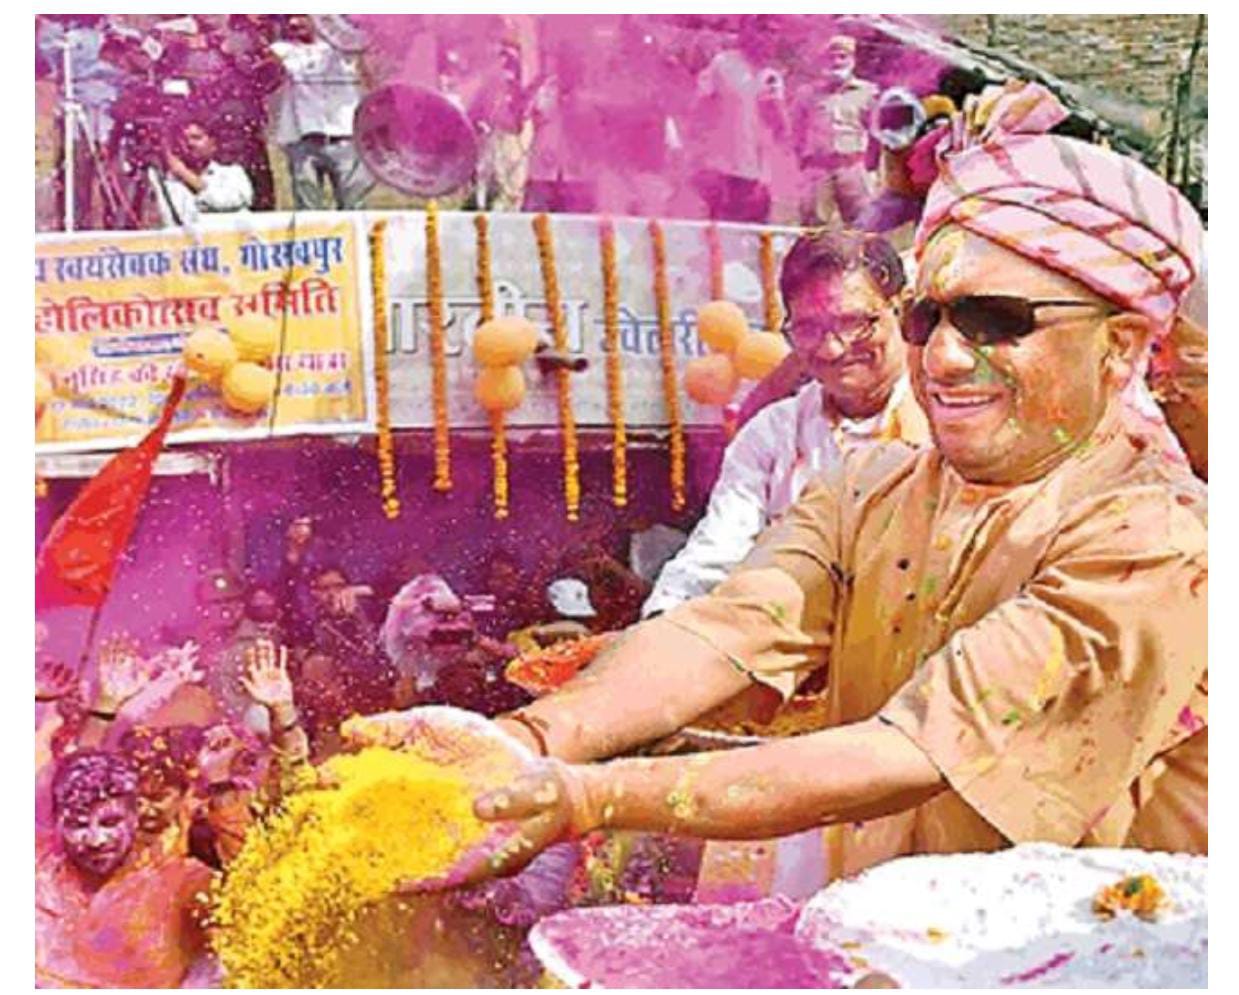 नानाजी देशमुख ने किया था भगवान नृसिंह रंगोत्सव शोभायात्रा की शुरुआत, फिर गोरक्षपीठ से भी जुड़ गया गहरा नाता